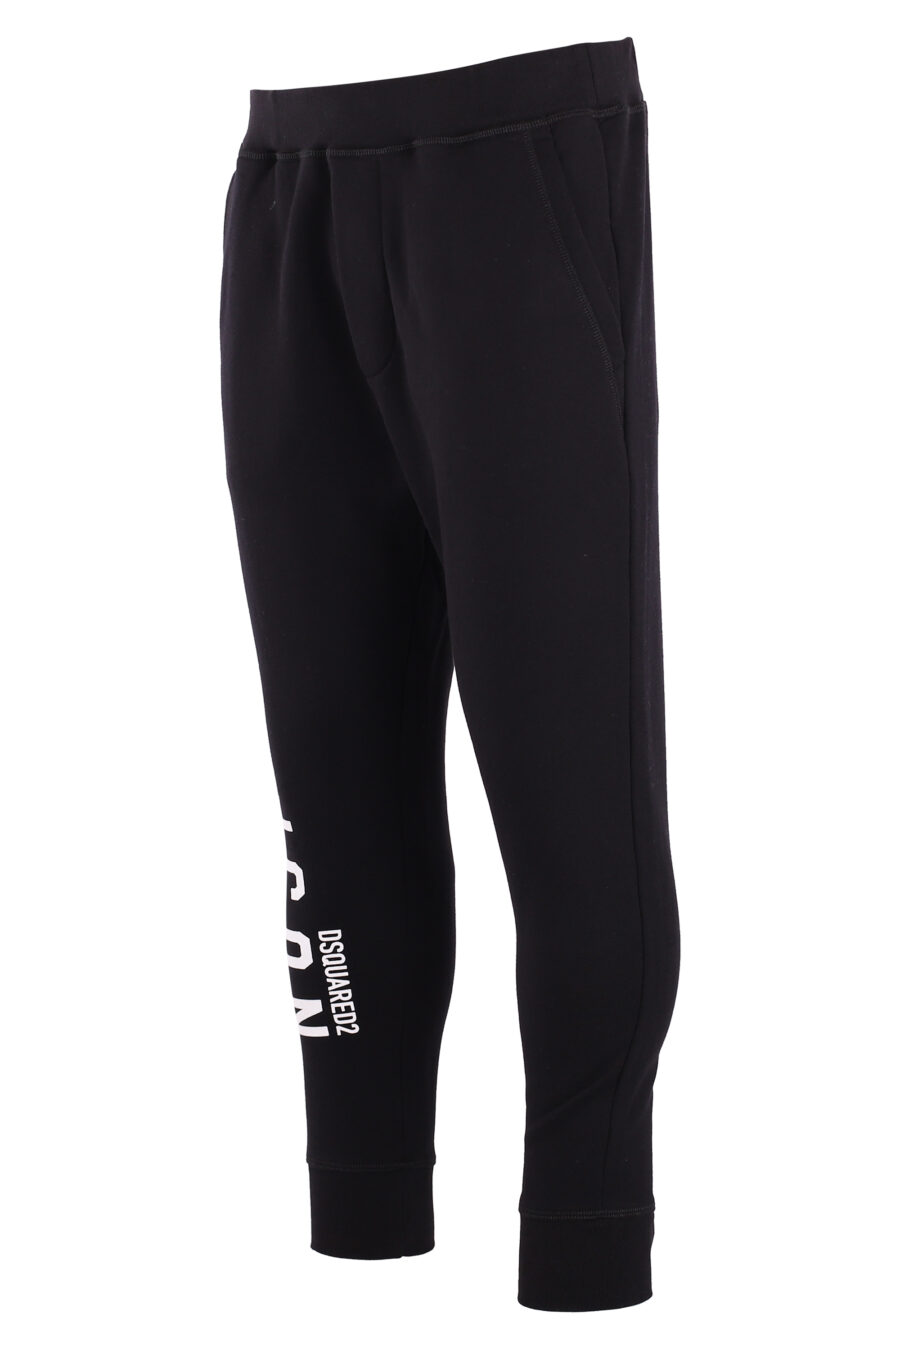 Pantalón de chándal negro "icon ski" con doble logo vertical blanco - IMG 8971